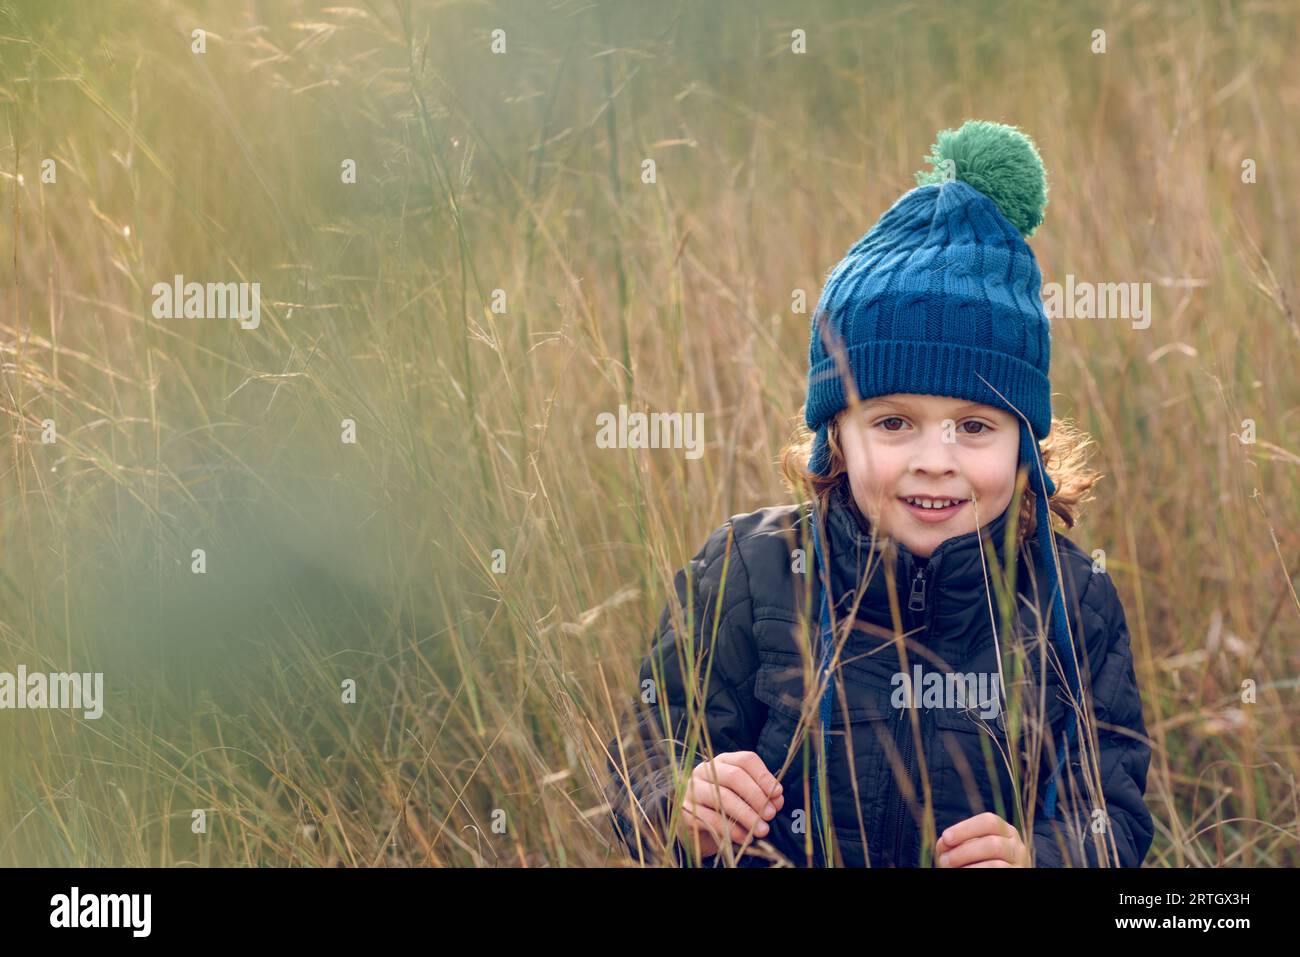 Positiver Junge in warmer Mütze und Oberbekleidung, der mit einem Lächeln auf die Kamera schaut, während er inmitten von hohem, trockenem Gras in der Natur steht Stockfoto